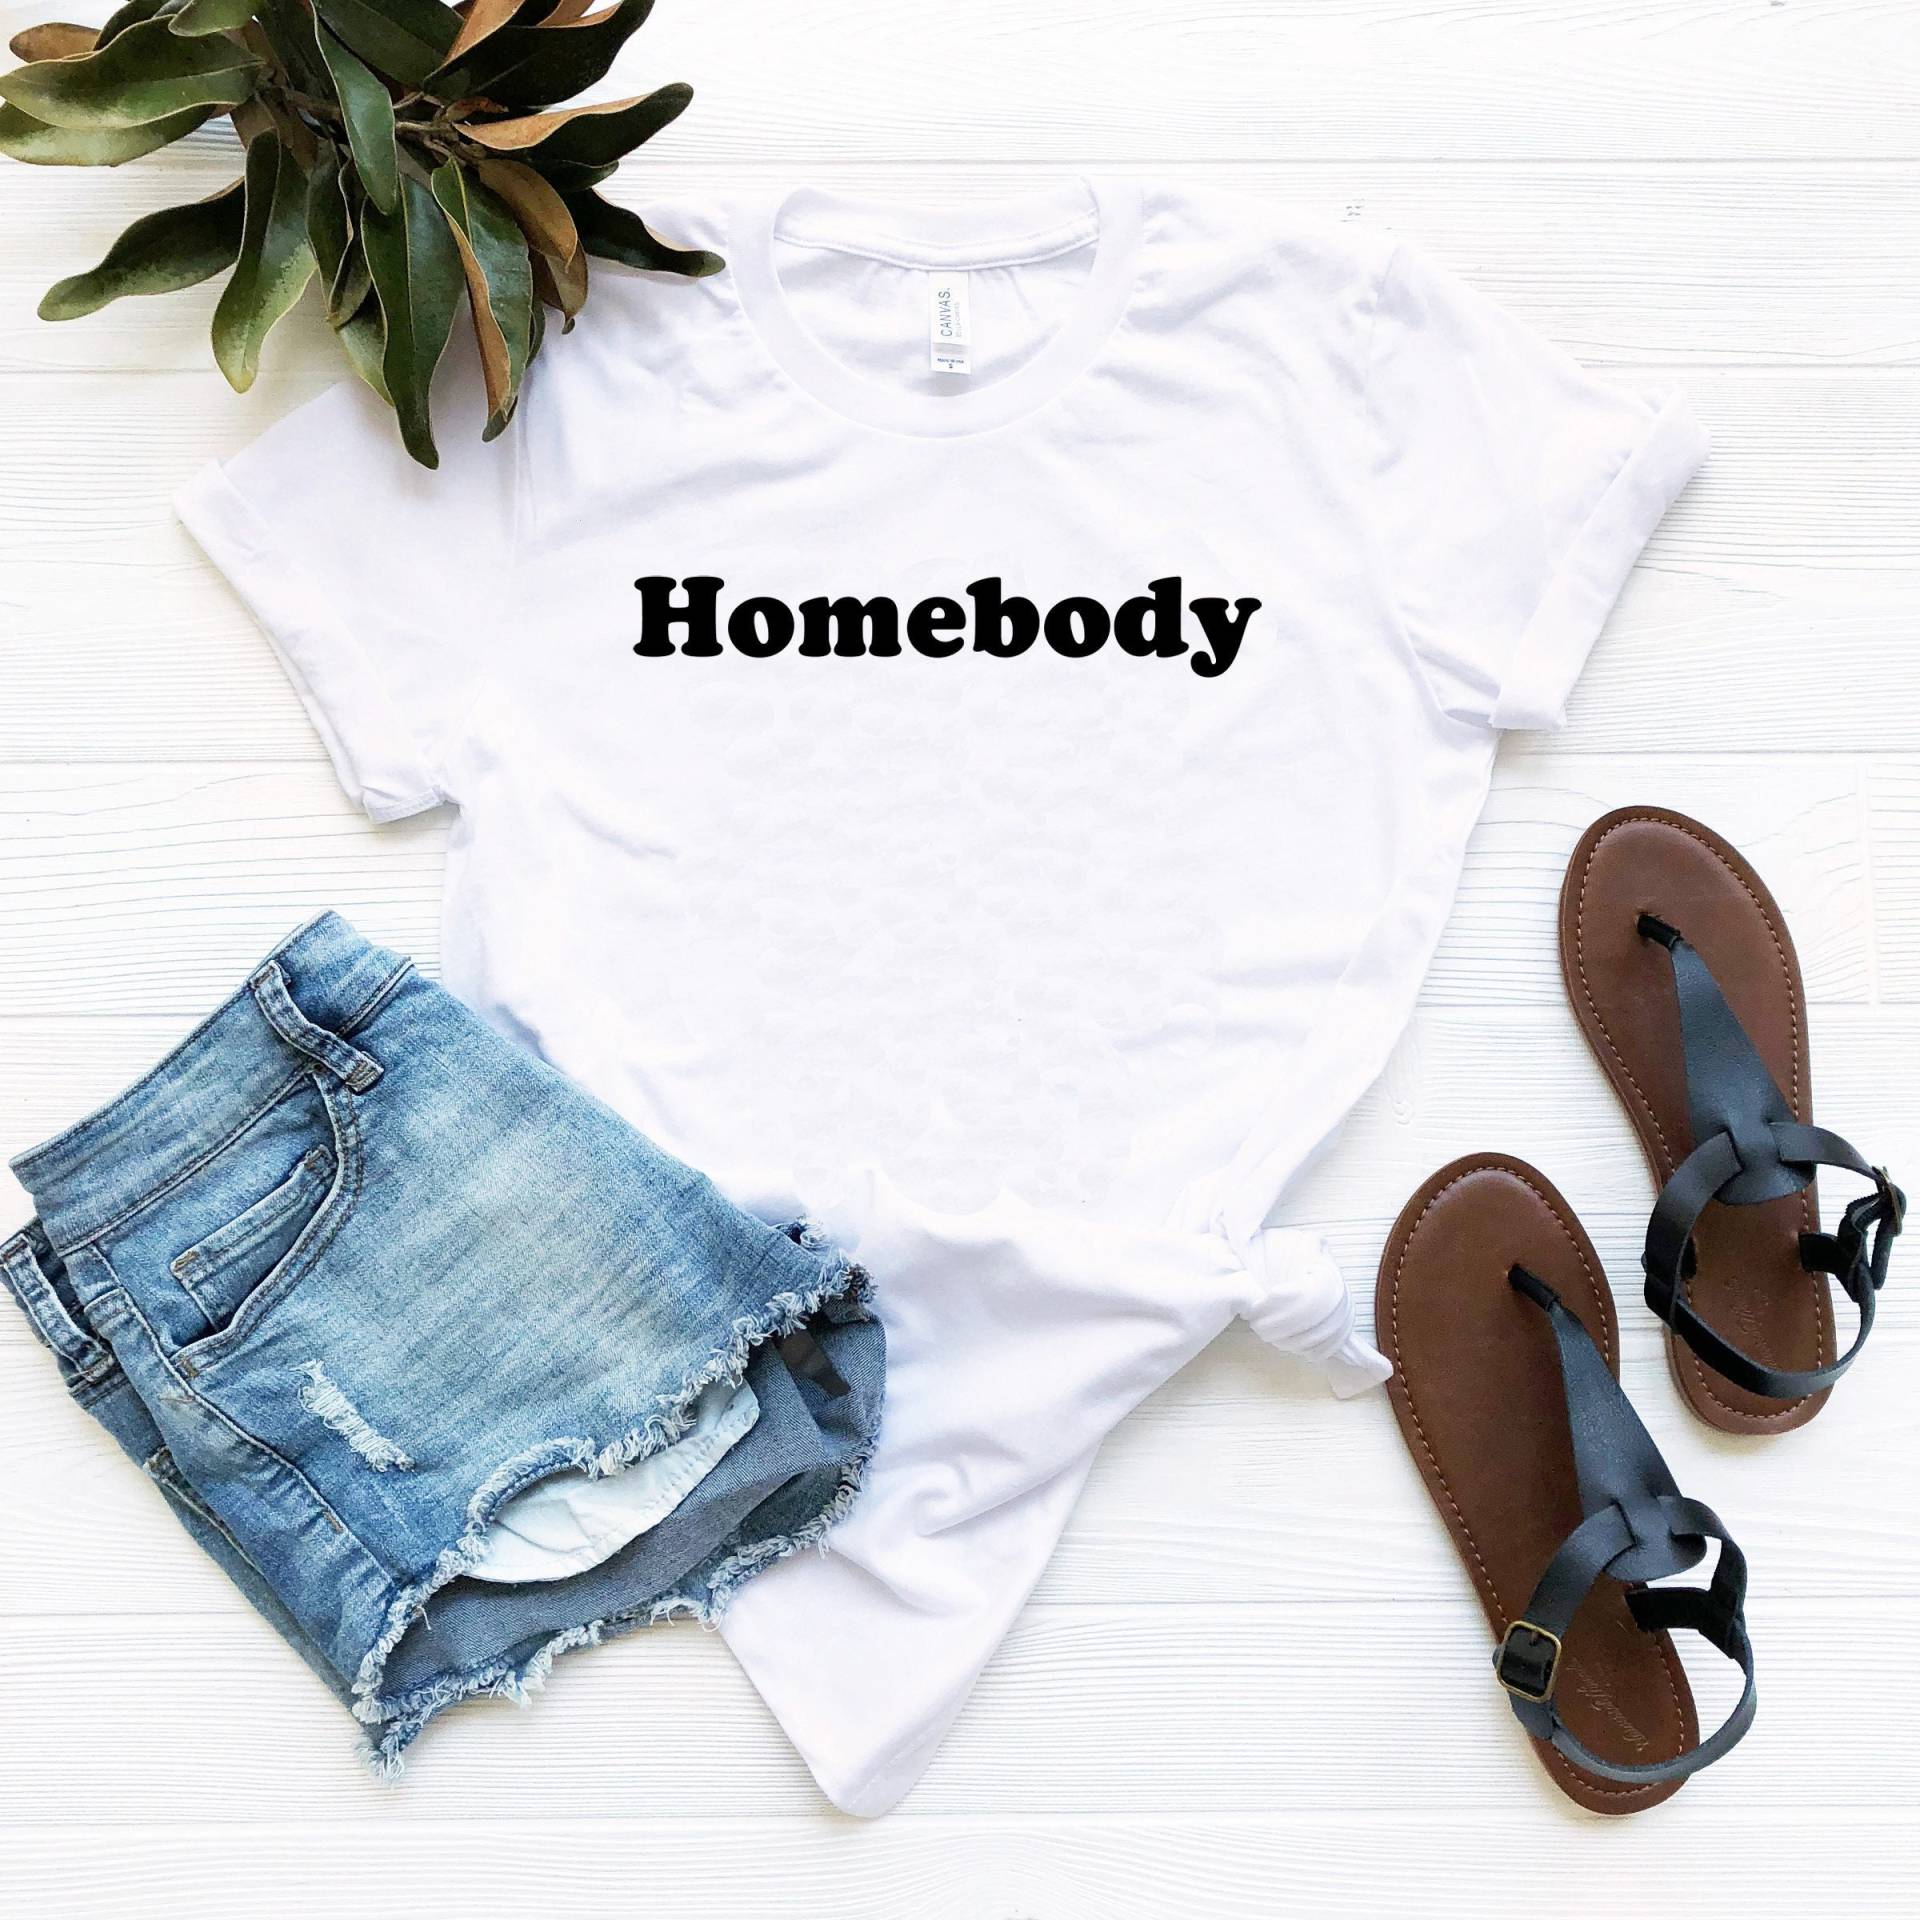 Homebody Shirt #homebody Geschenk Für Introvertierte Homebody Drinnen Süße Geschenke Ew People It's Too Outside von SimplyTraded